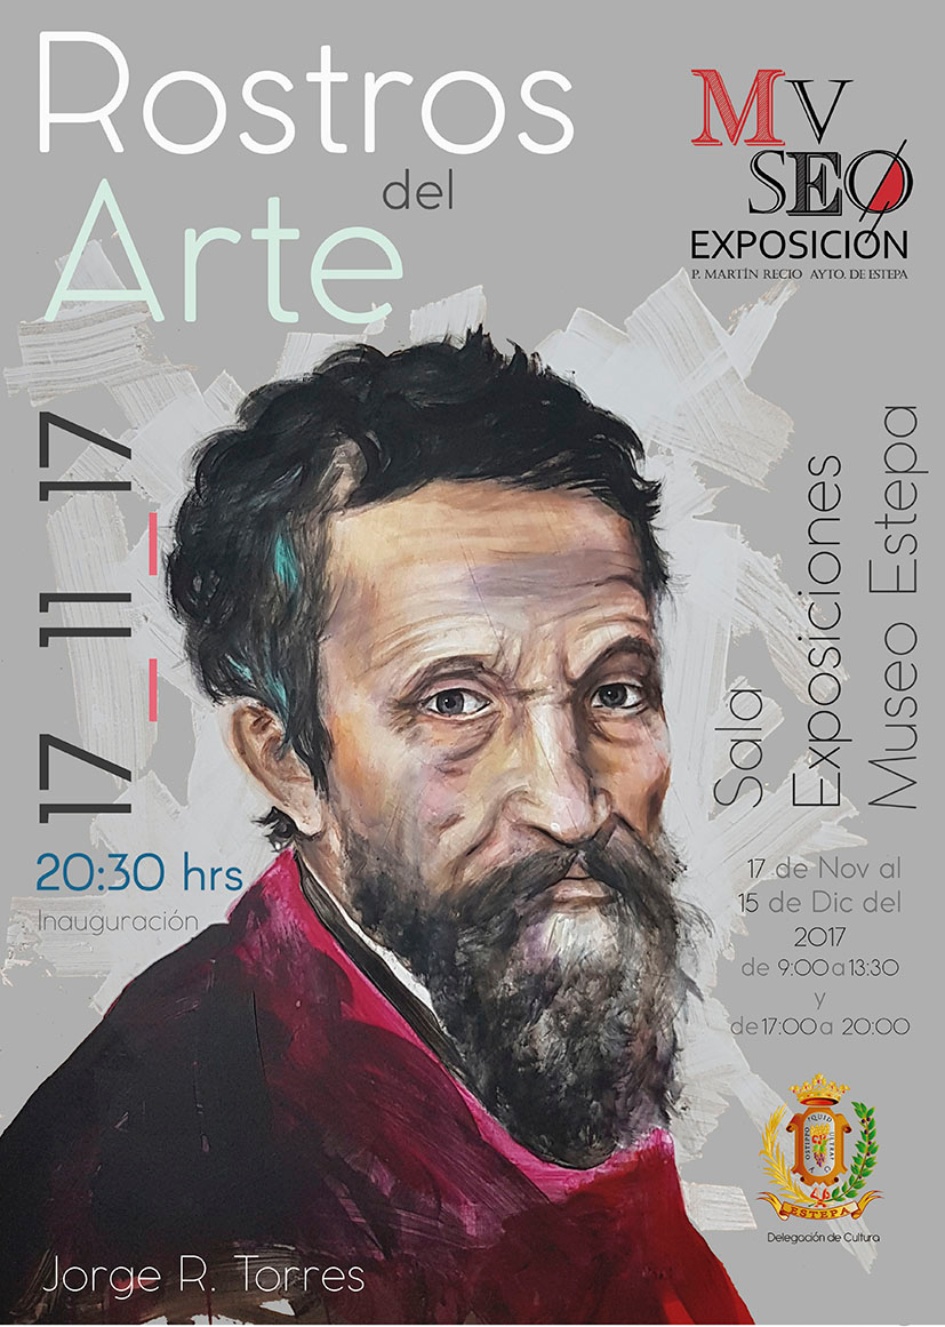 Exposición de pintura en Estepa: "Rostros del Arte"